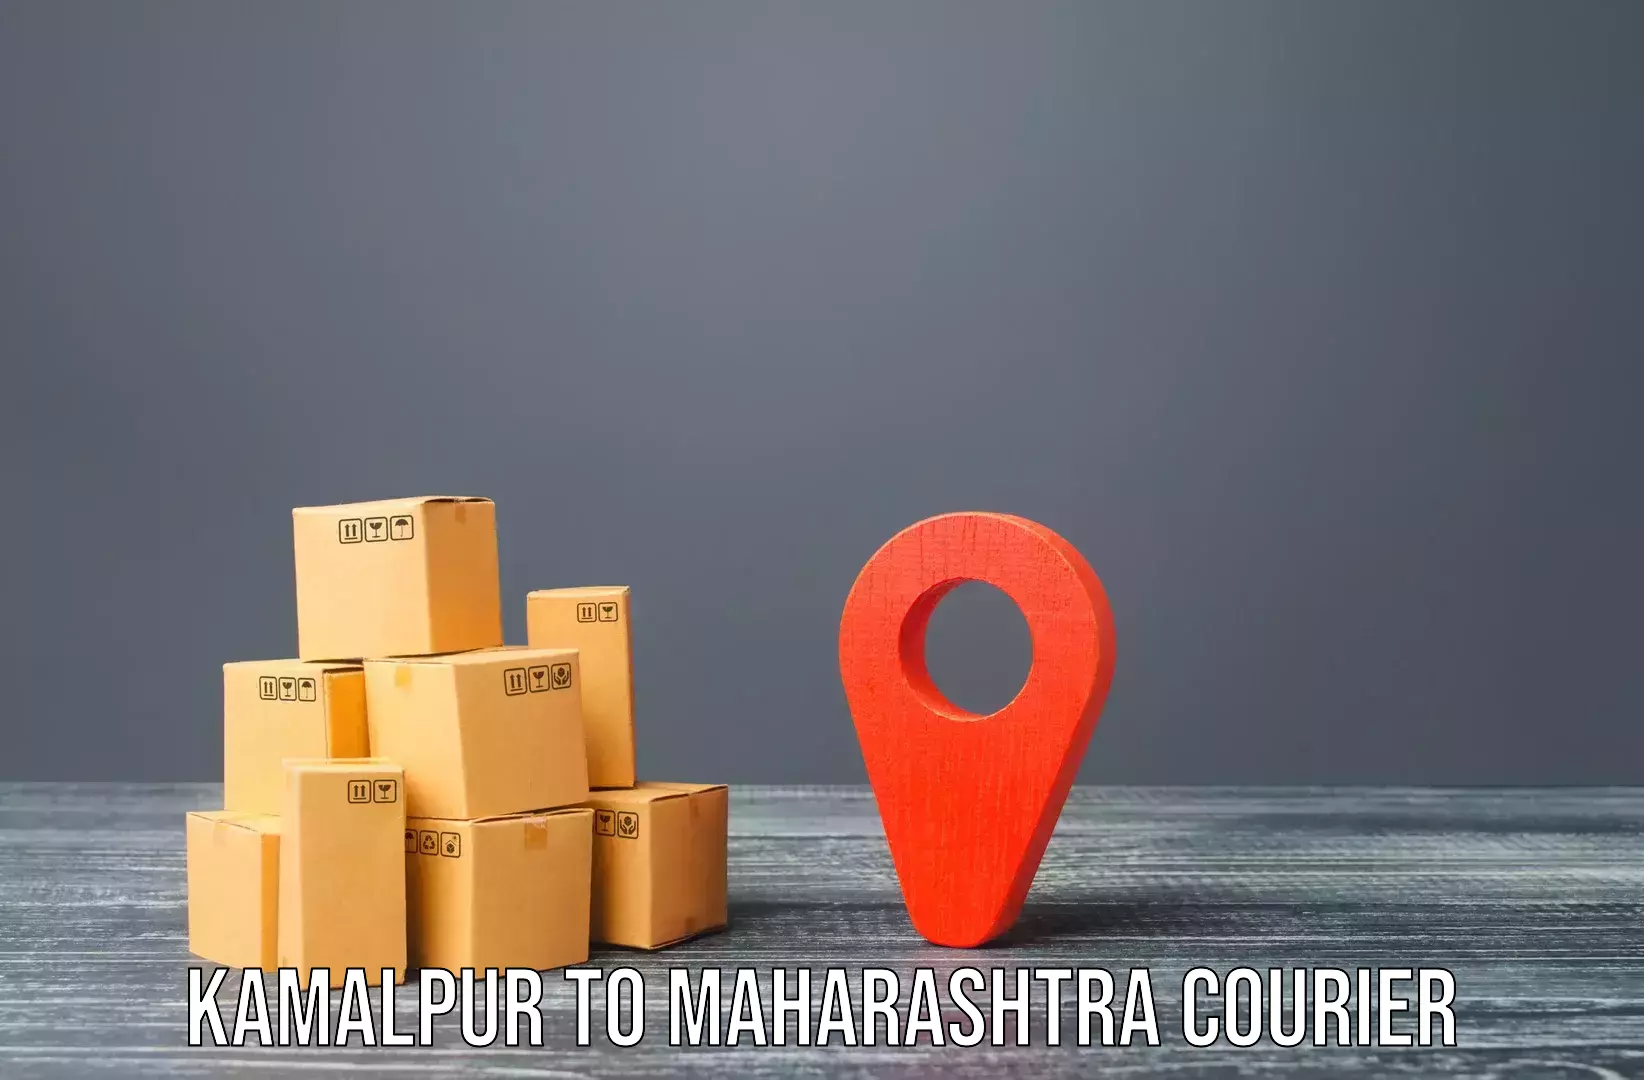 Expert moving and storage Kamalpur to Maharashtra